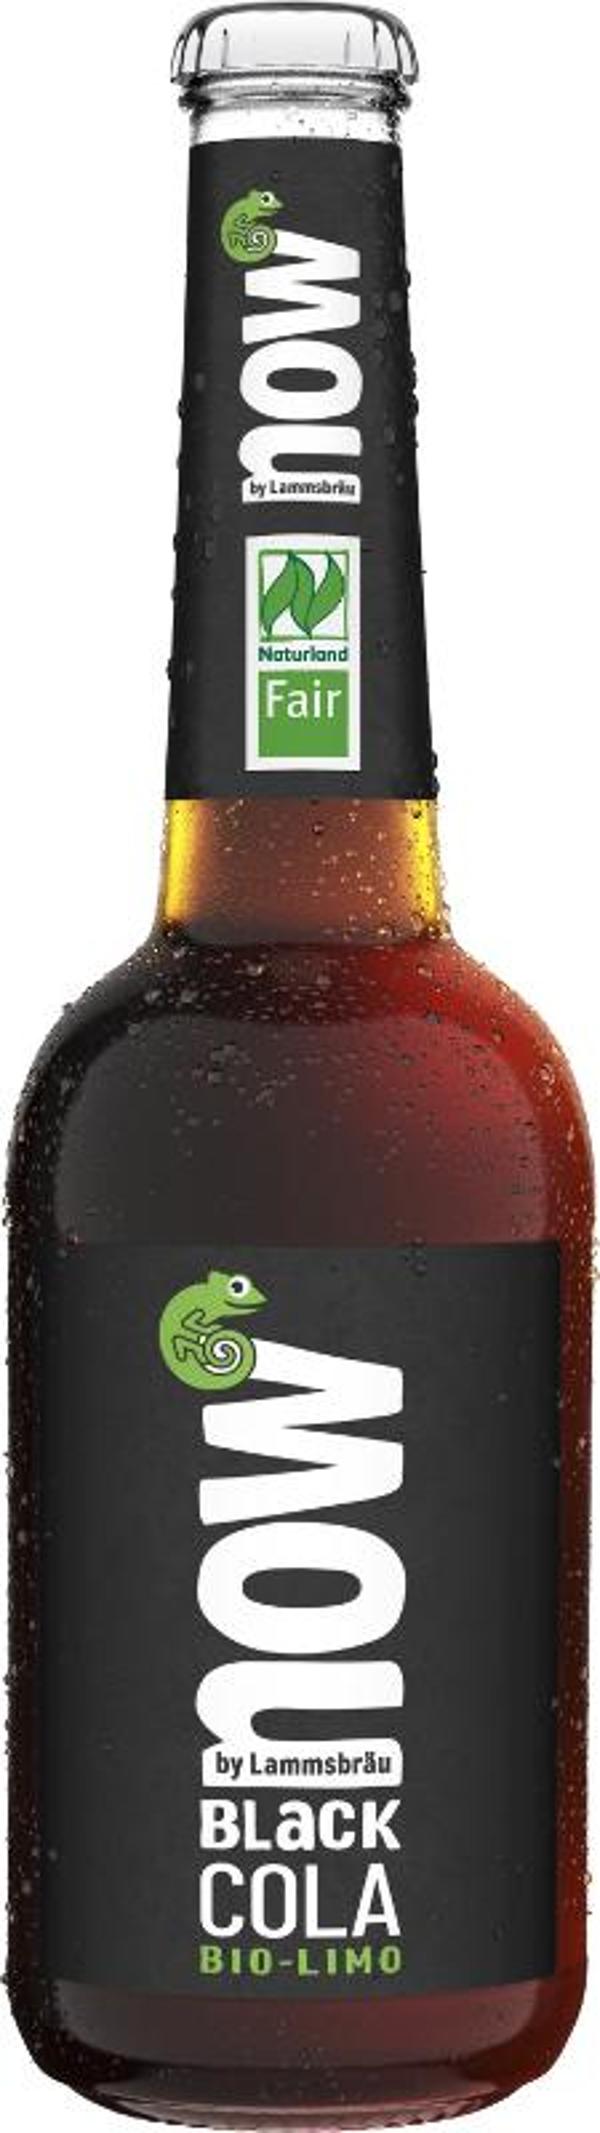 Produktfoto zu 10er Kasten now - Black Cola von Lammsbräu